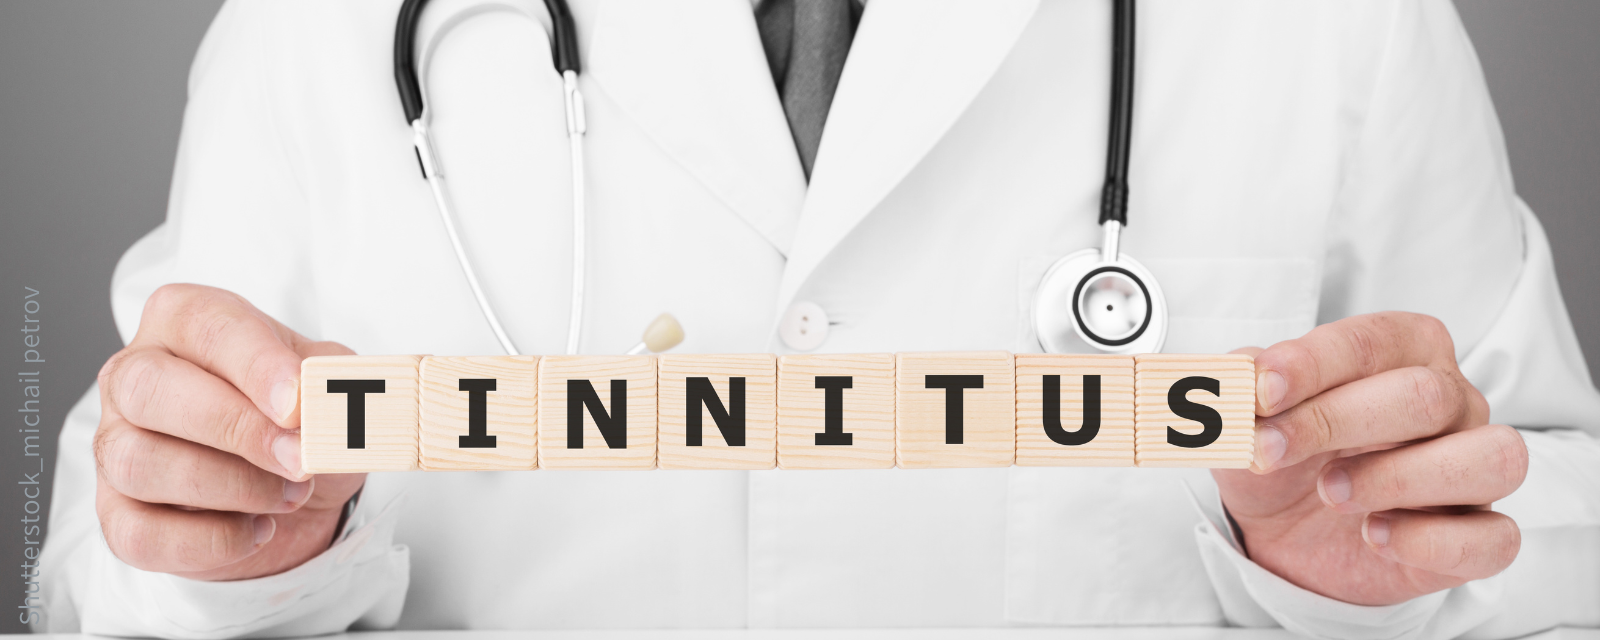 Arzt hält Buchstaben mit "Tinnitus"